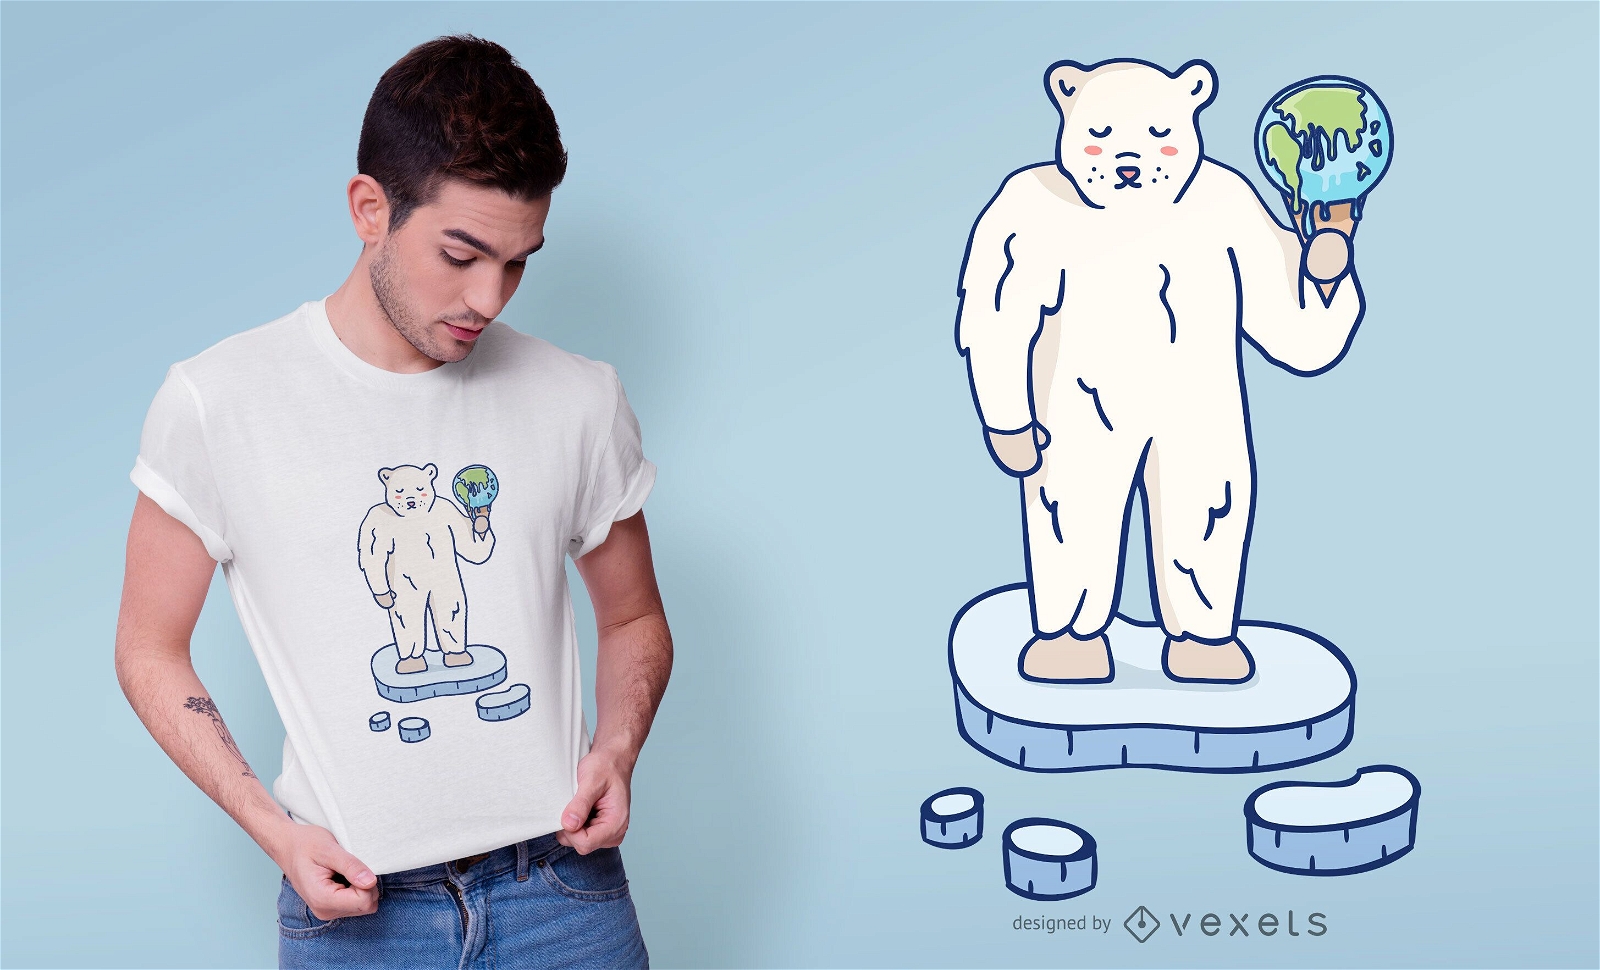 Dise?o de camiseta de oso polar de calentamiento global.